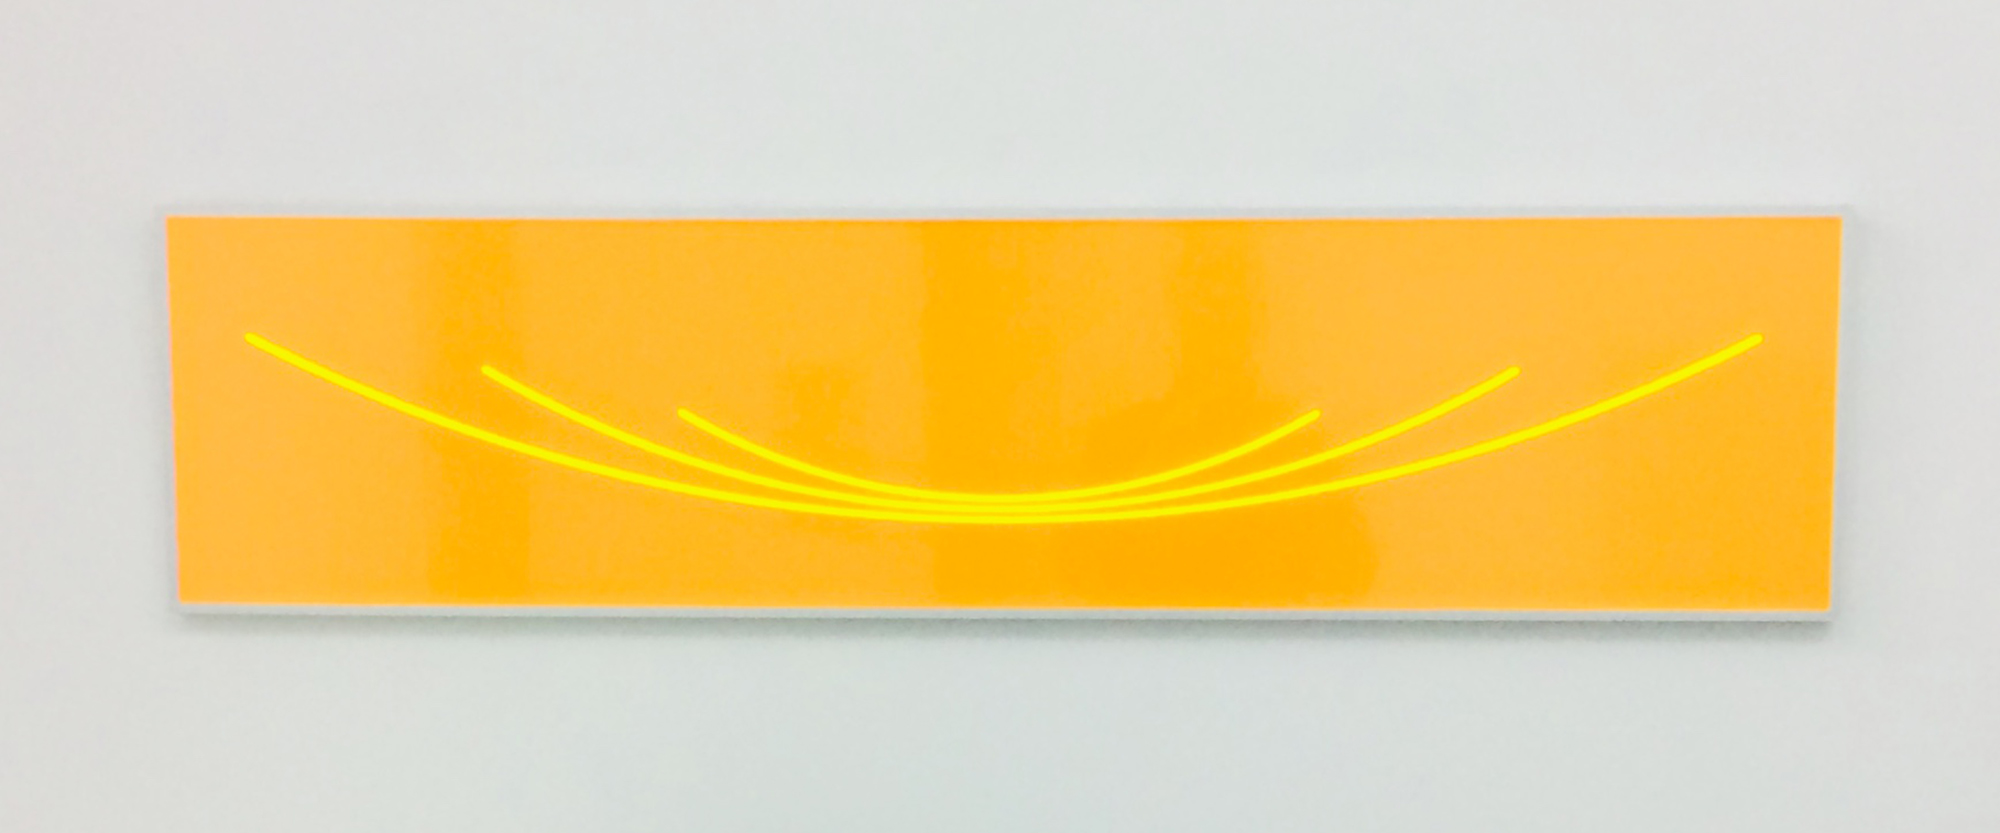 "Exzentrisch offen" - 2017, Acrylglas lavaorange, fluoreszierend, 34 x 144 x 0,3 cm